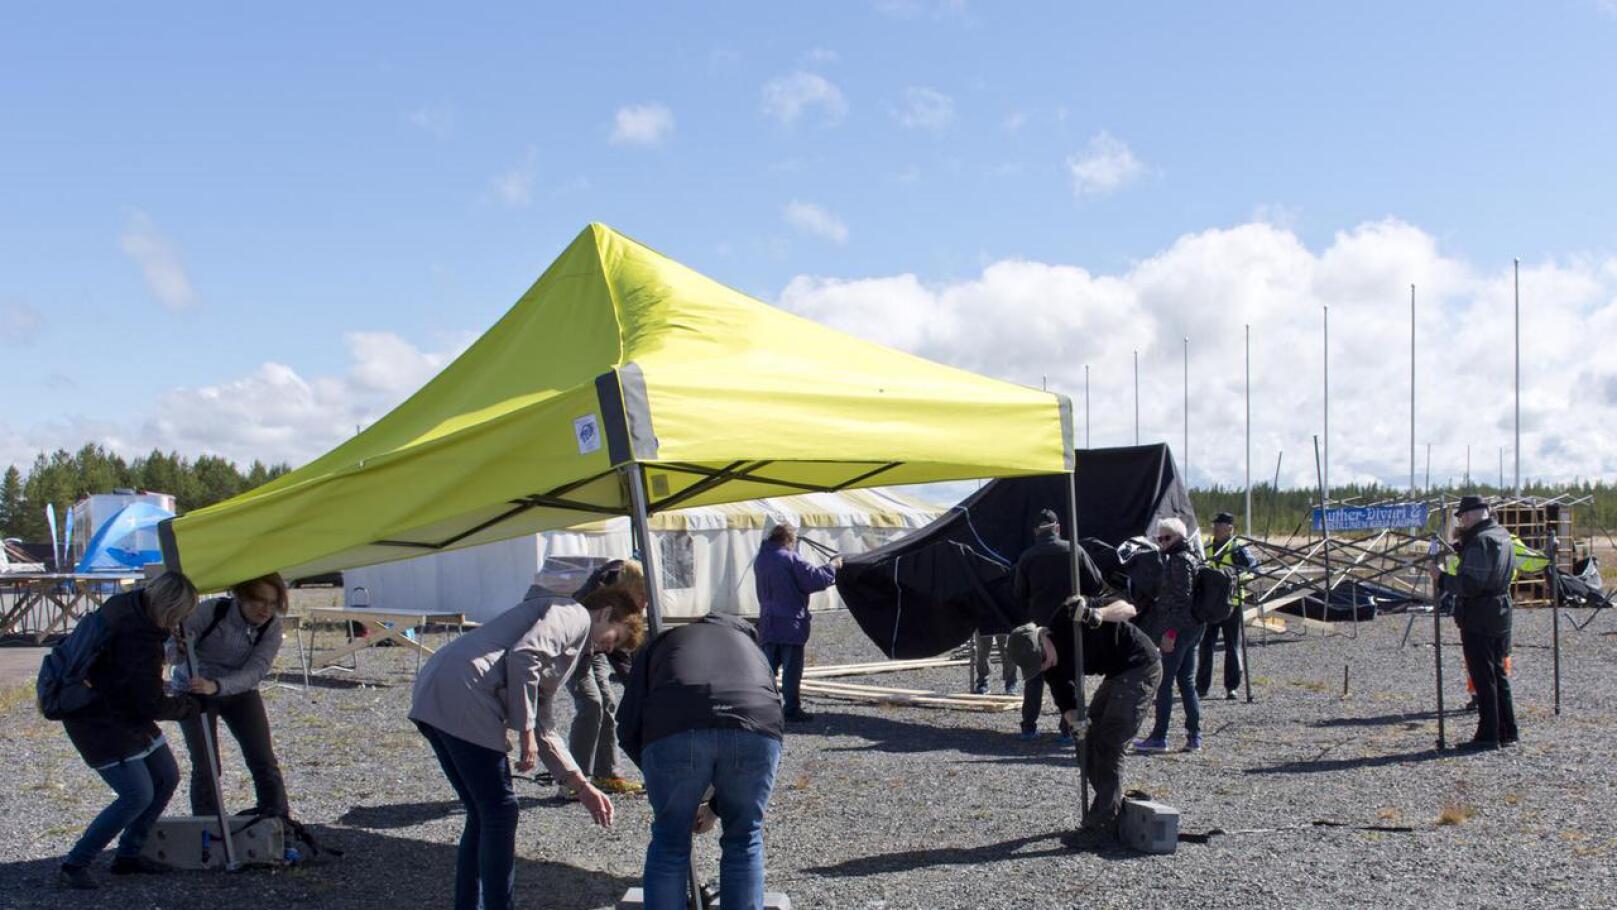 Kova tuuli on tuonut haasteita telttojen pystytykseen Evankelumijuhlan juhla-alueelle.